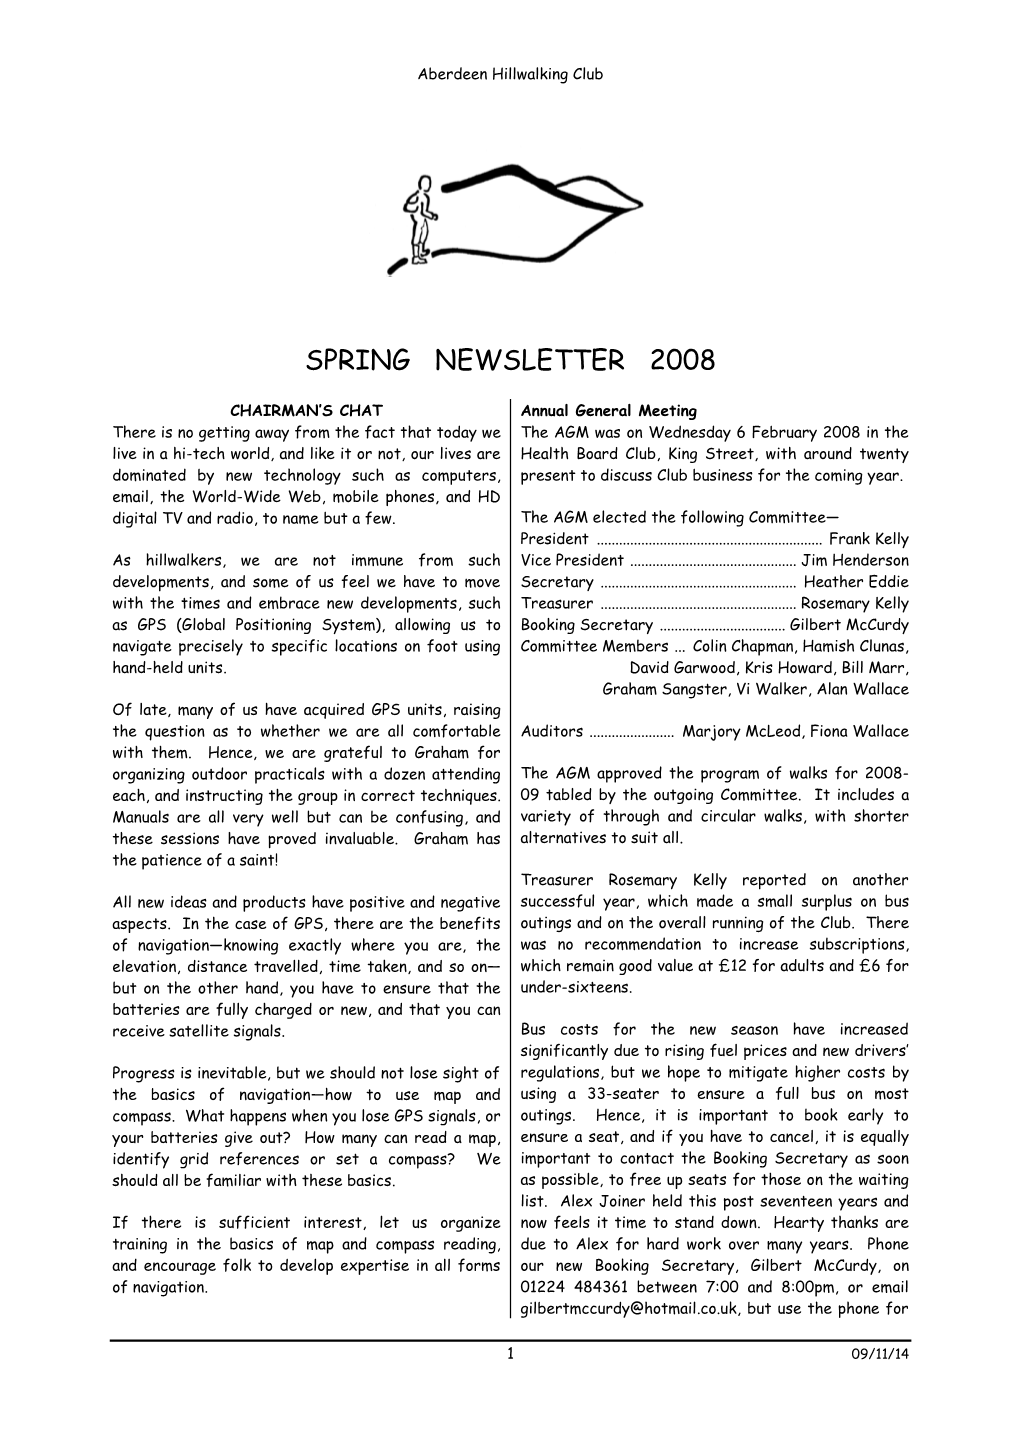 Spring Newsletter 2008